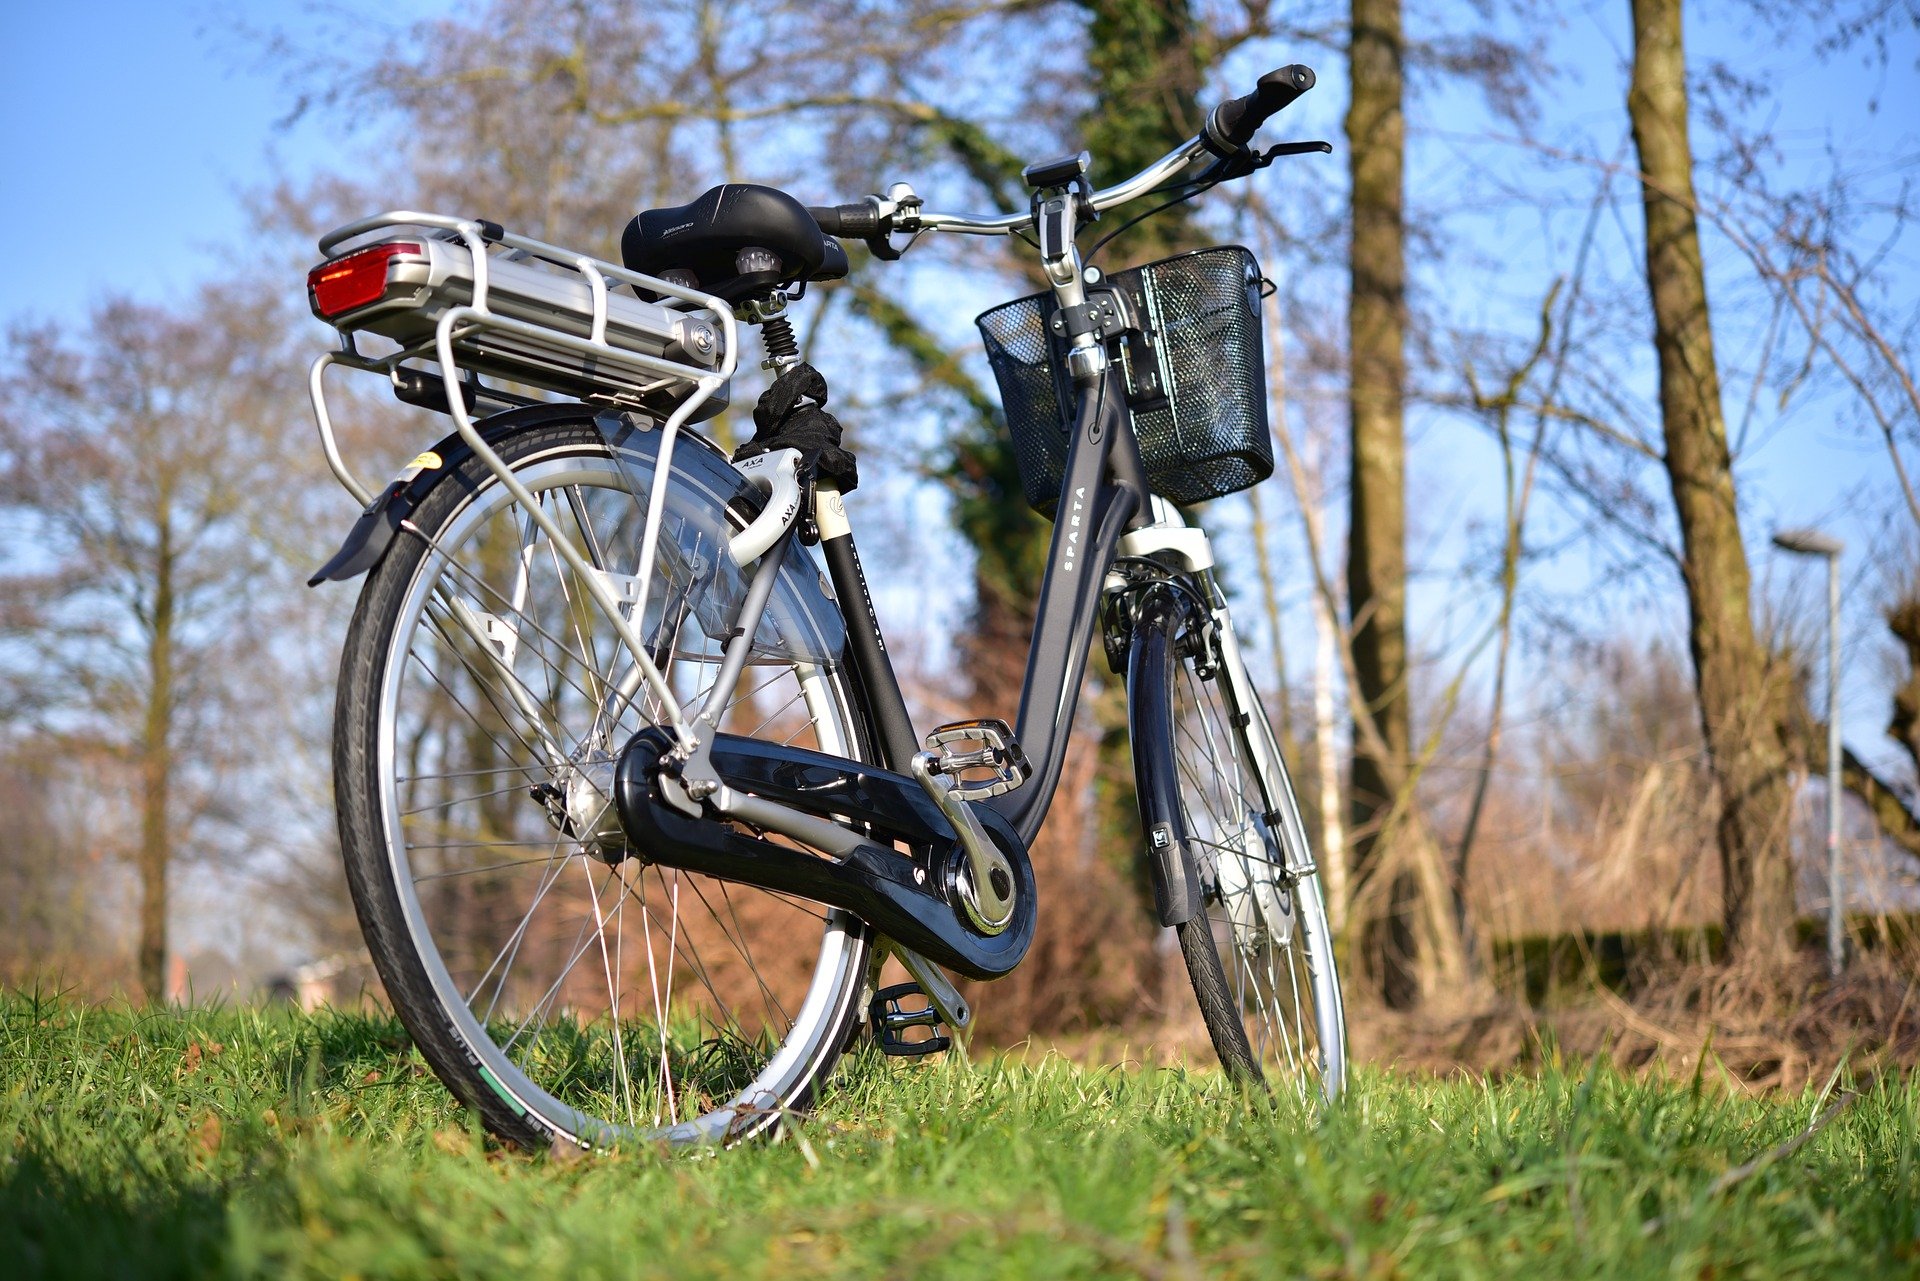 zwanger metaal vergeten Is mijn fiets batterij aan vervanging toe? Lees het snel in ons blogartikel!